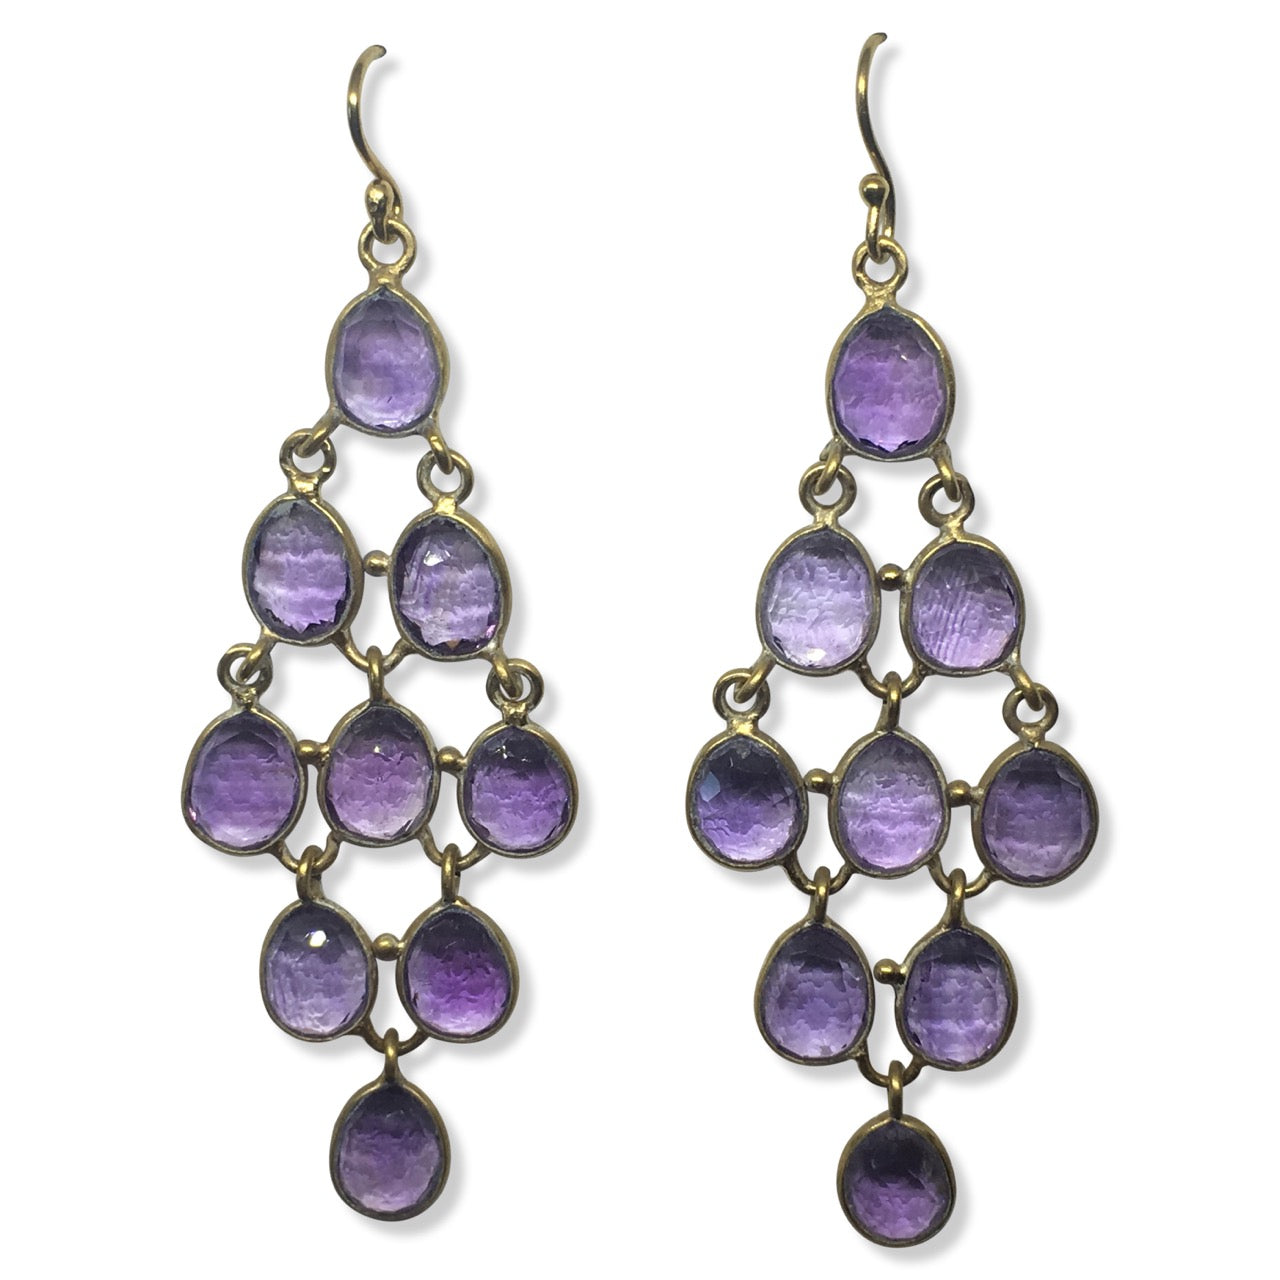 Amethyst chandelier earrings - Stockley Jewellery